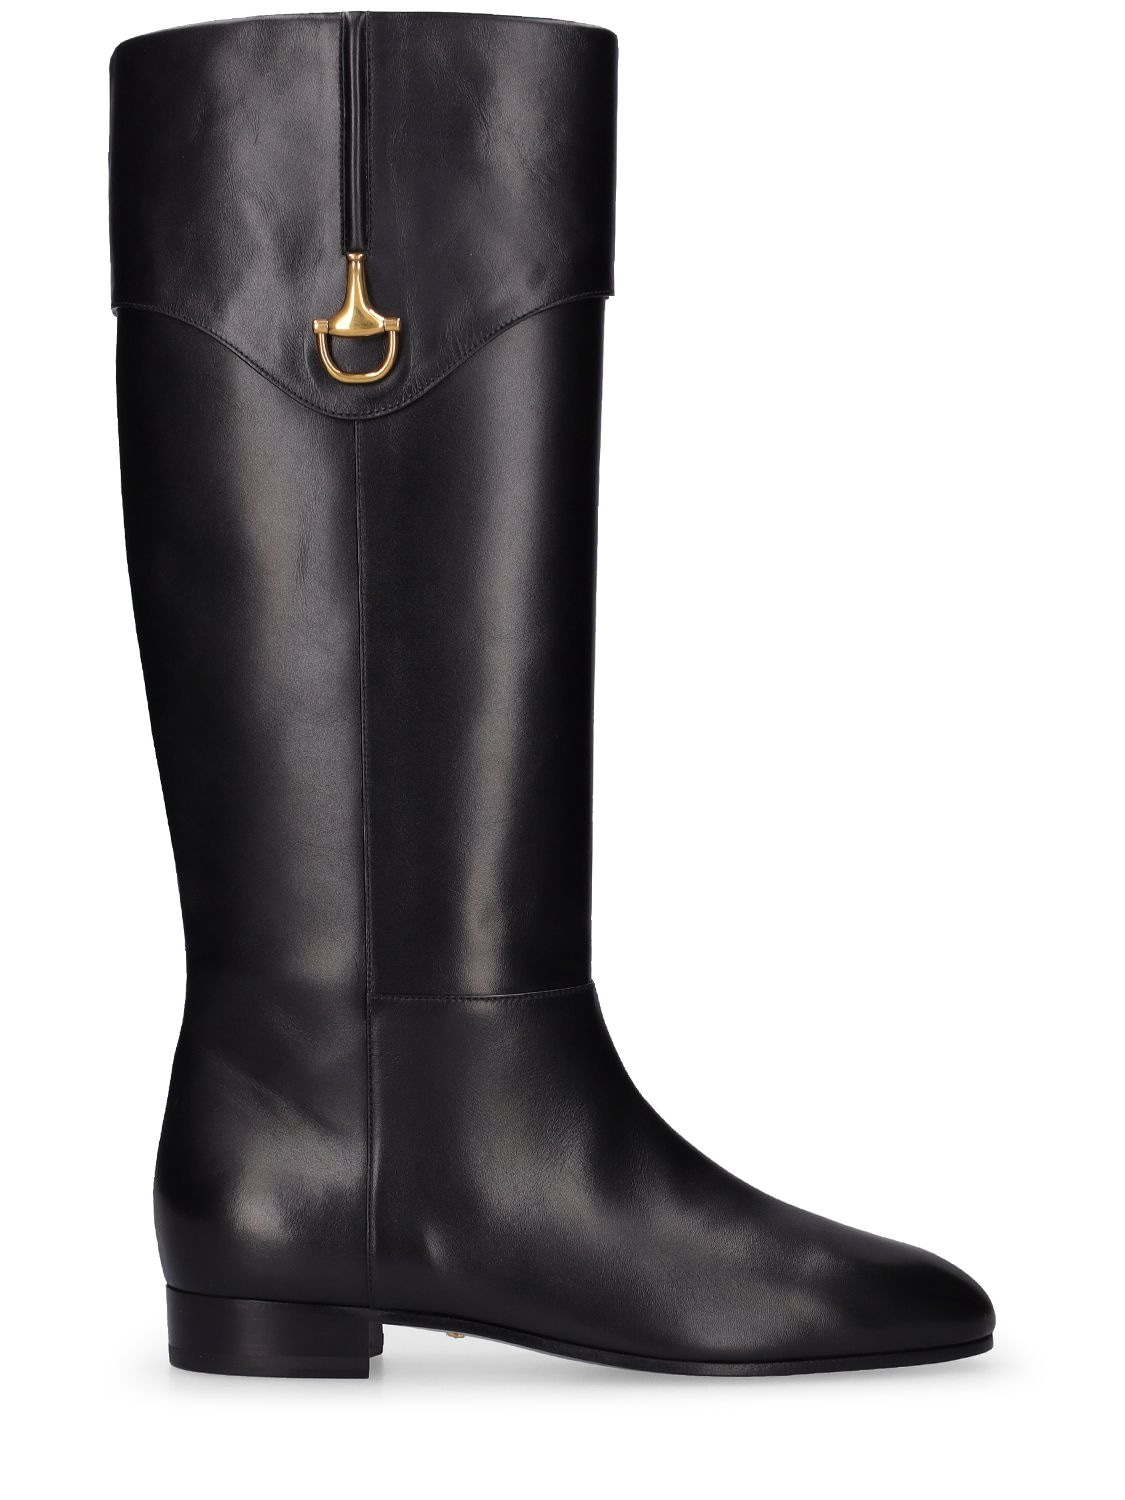 GUCCI 20mm Miranda Leather Tall Boots